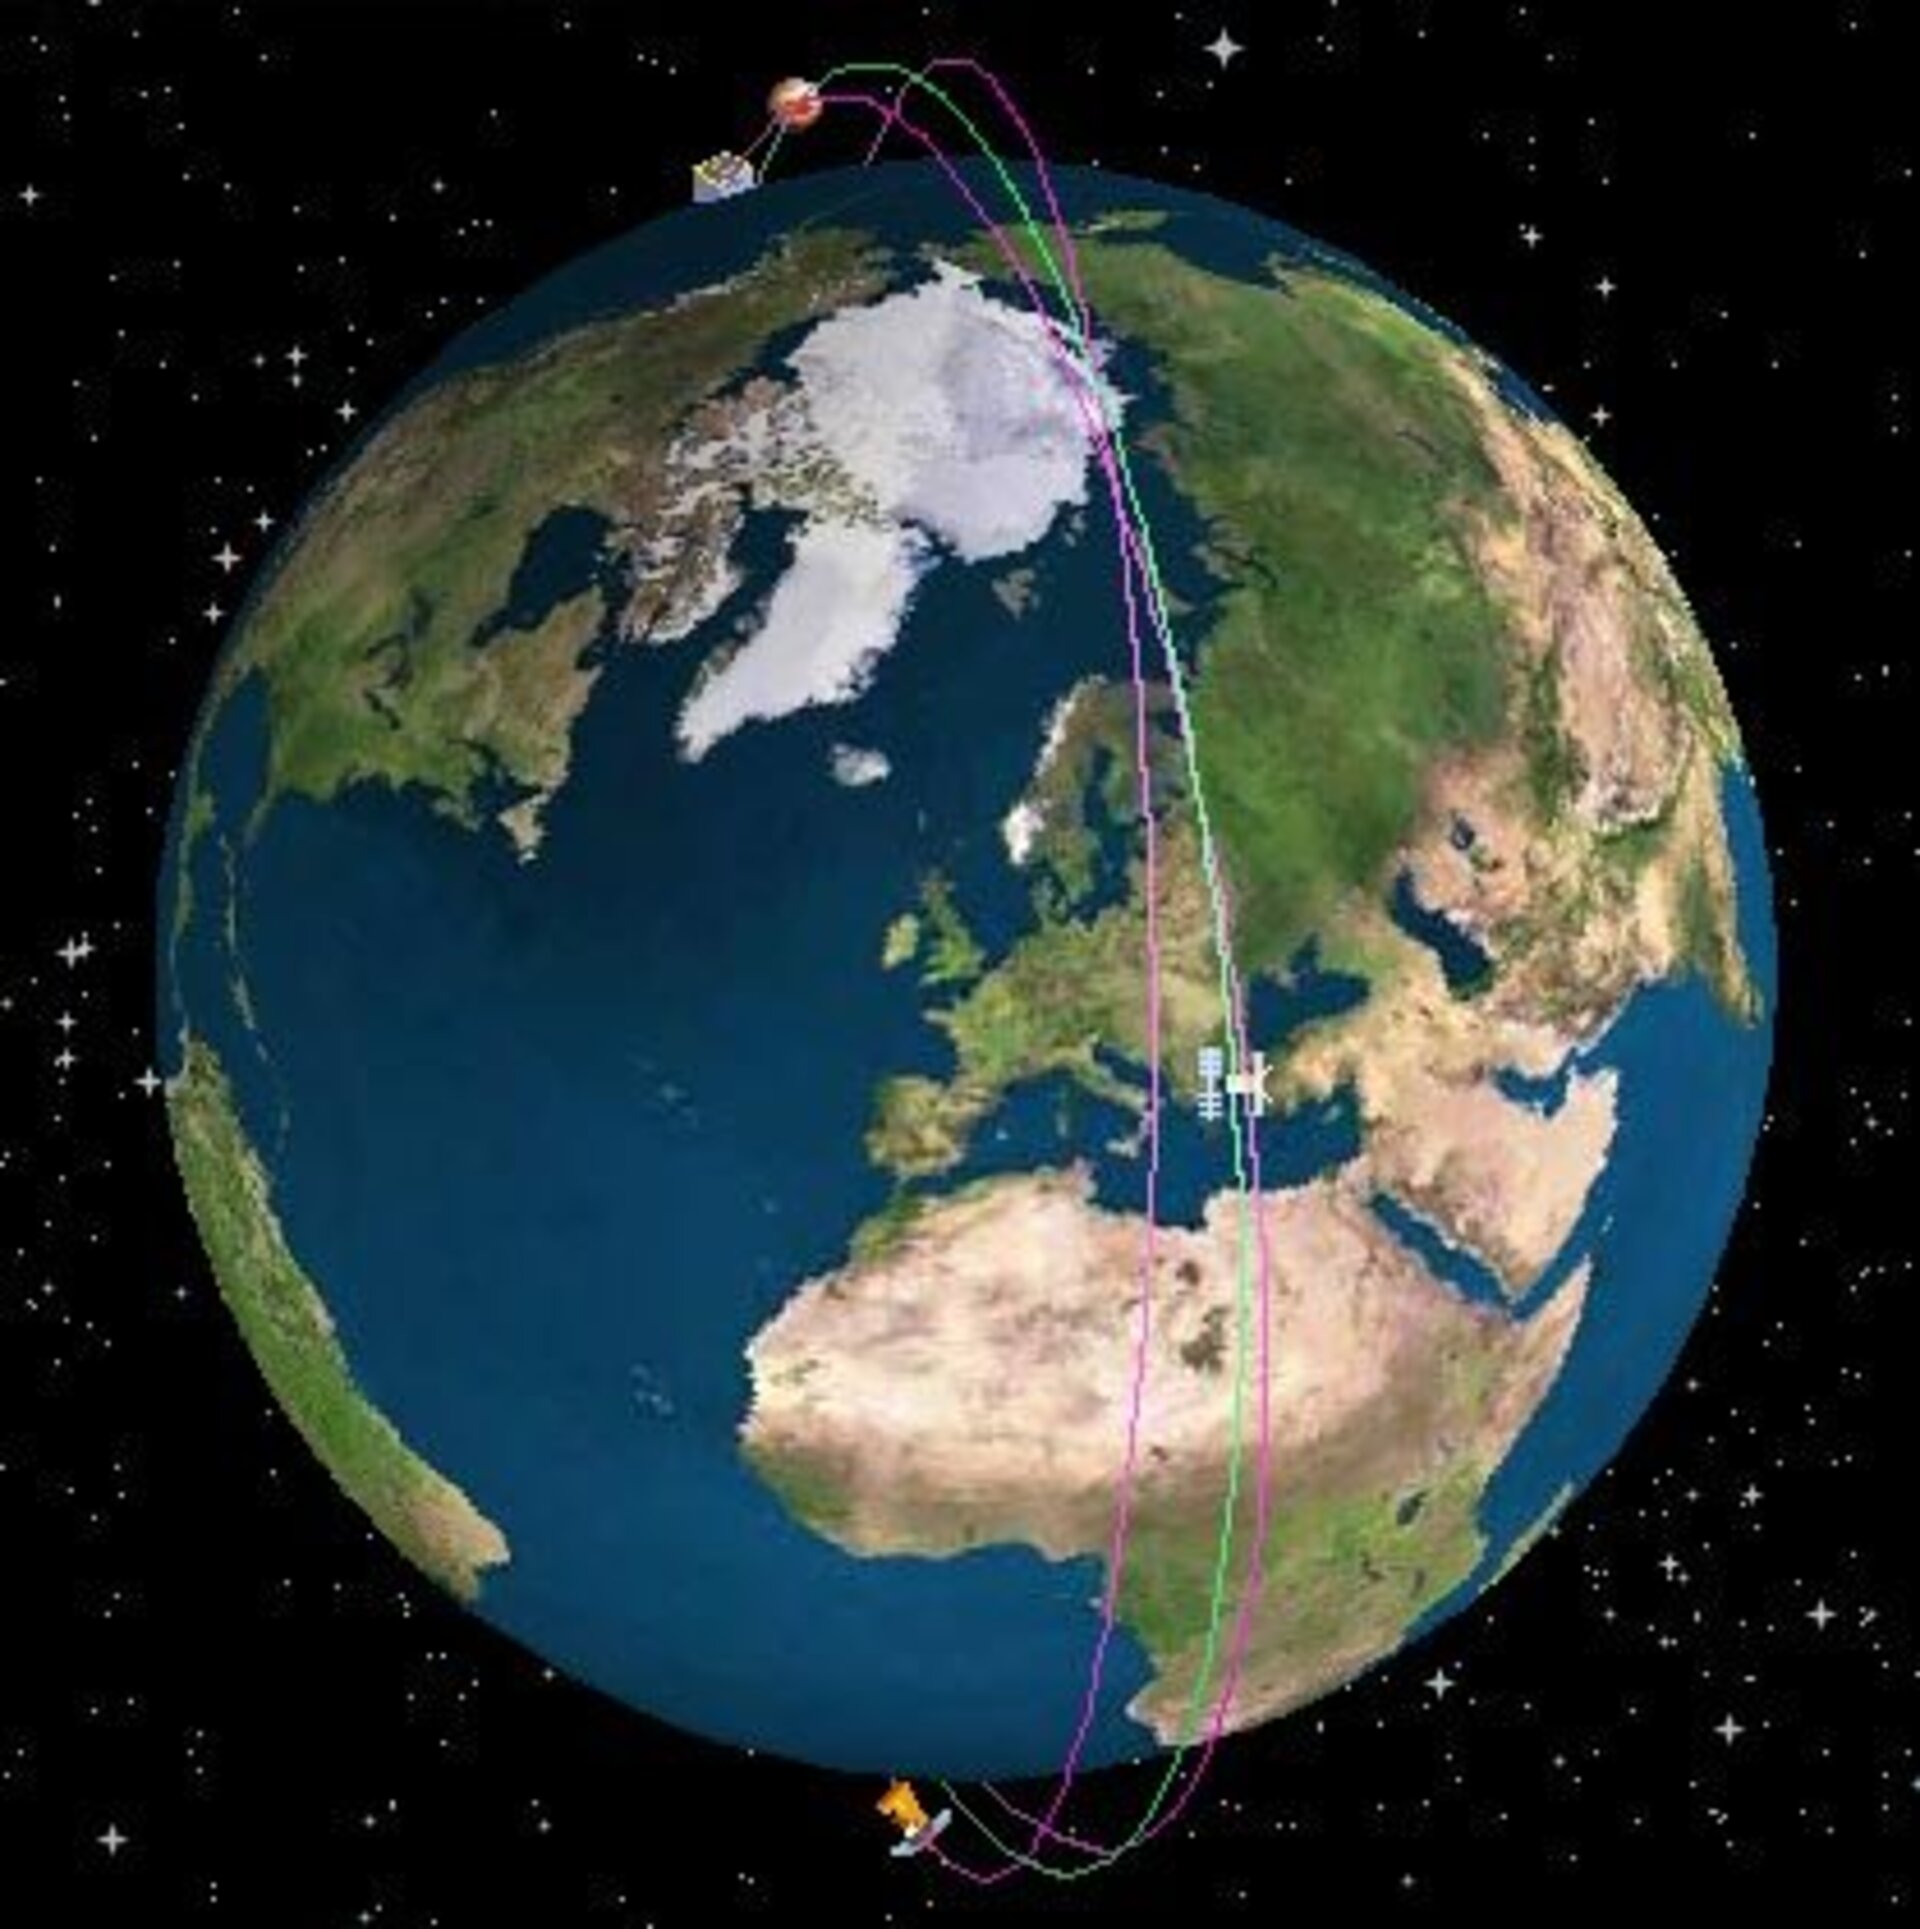 Sentinel satellitterne skal overvåge Jorden i samspil.